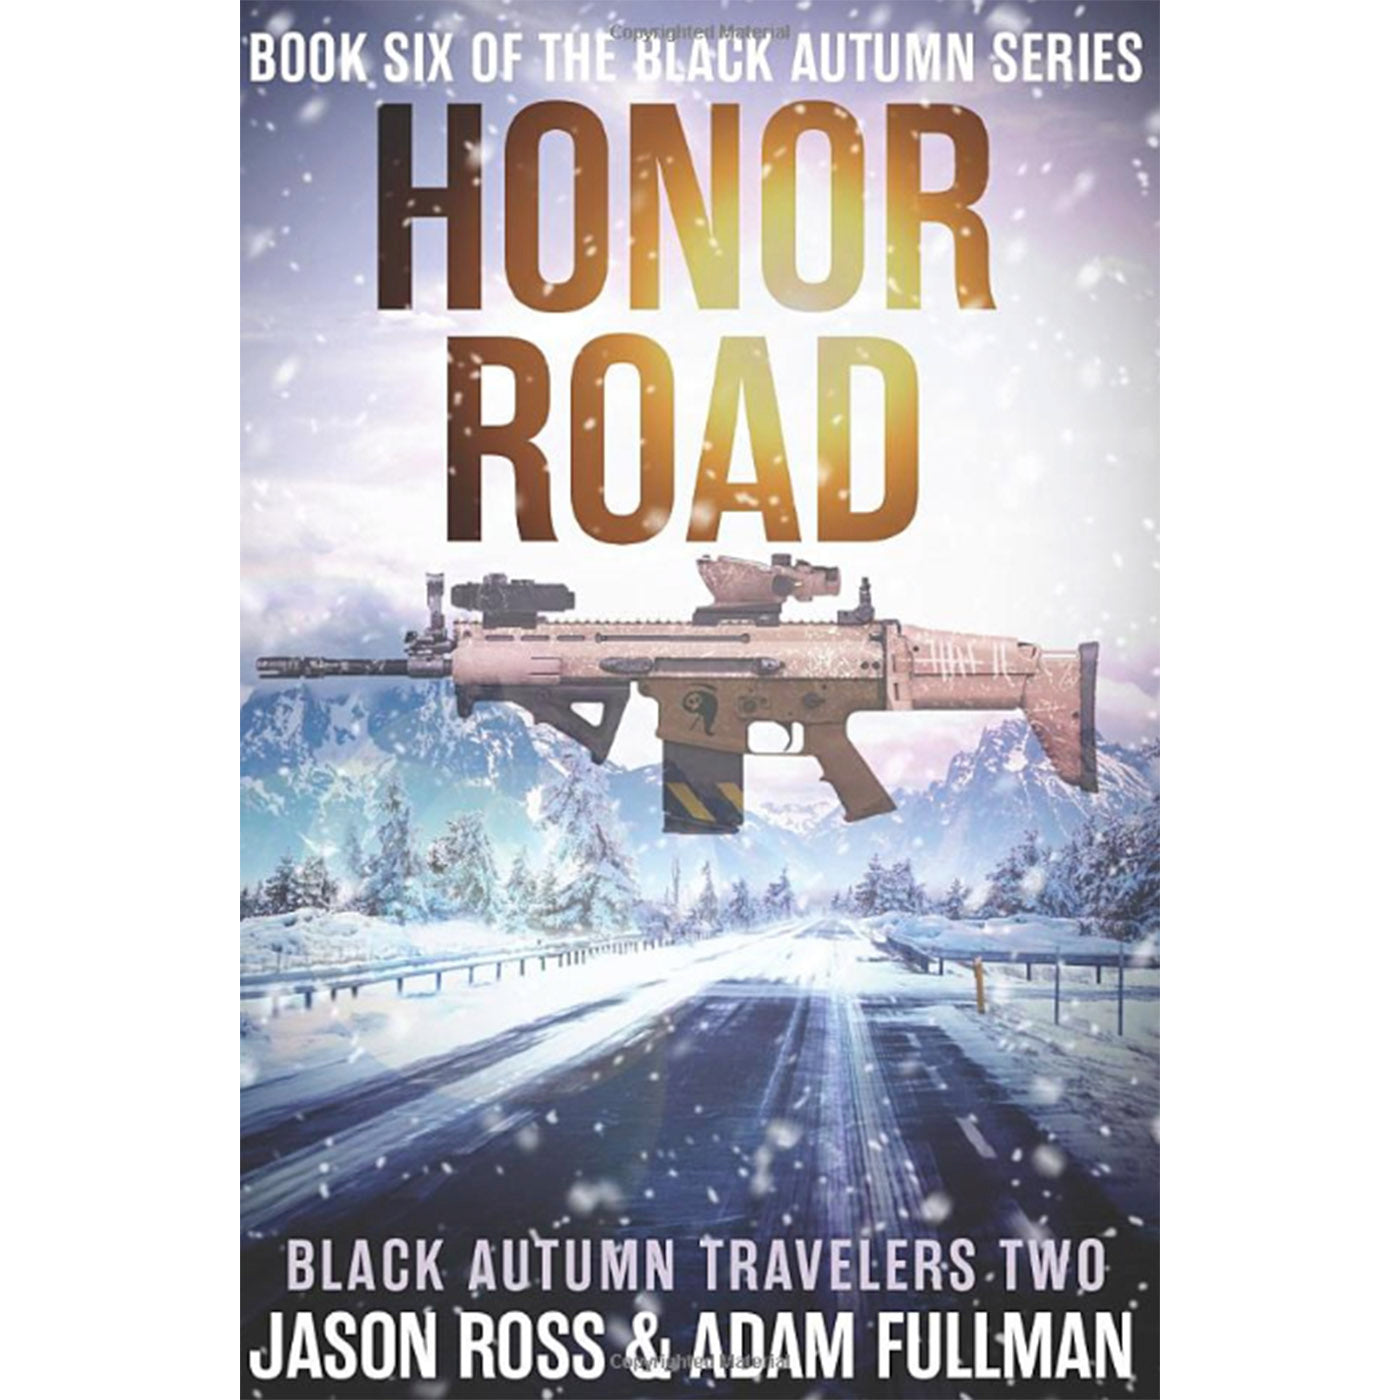 Honor Road: A Black Autumn Saga (The Black Autumn Series Book 6)